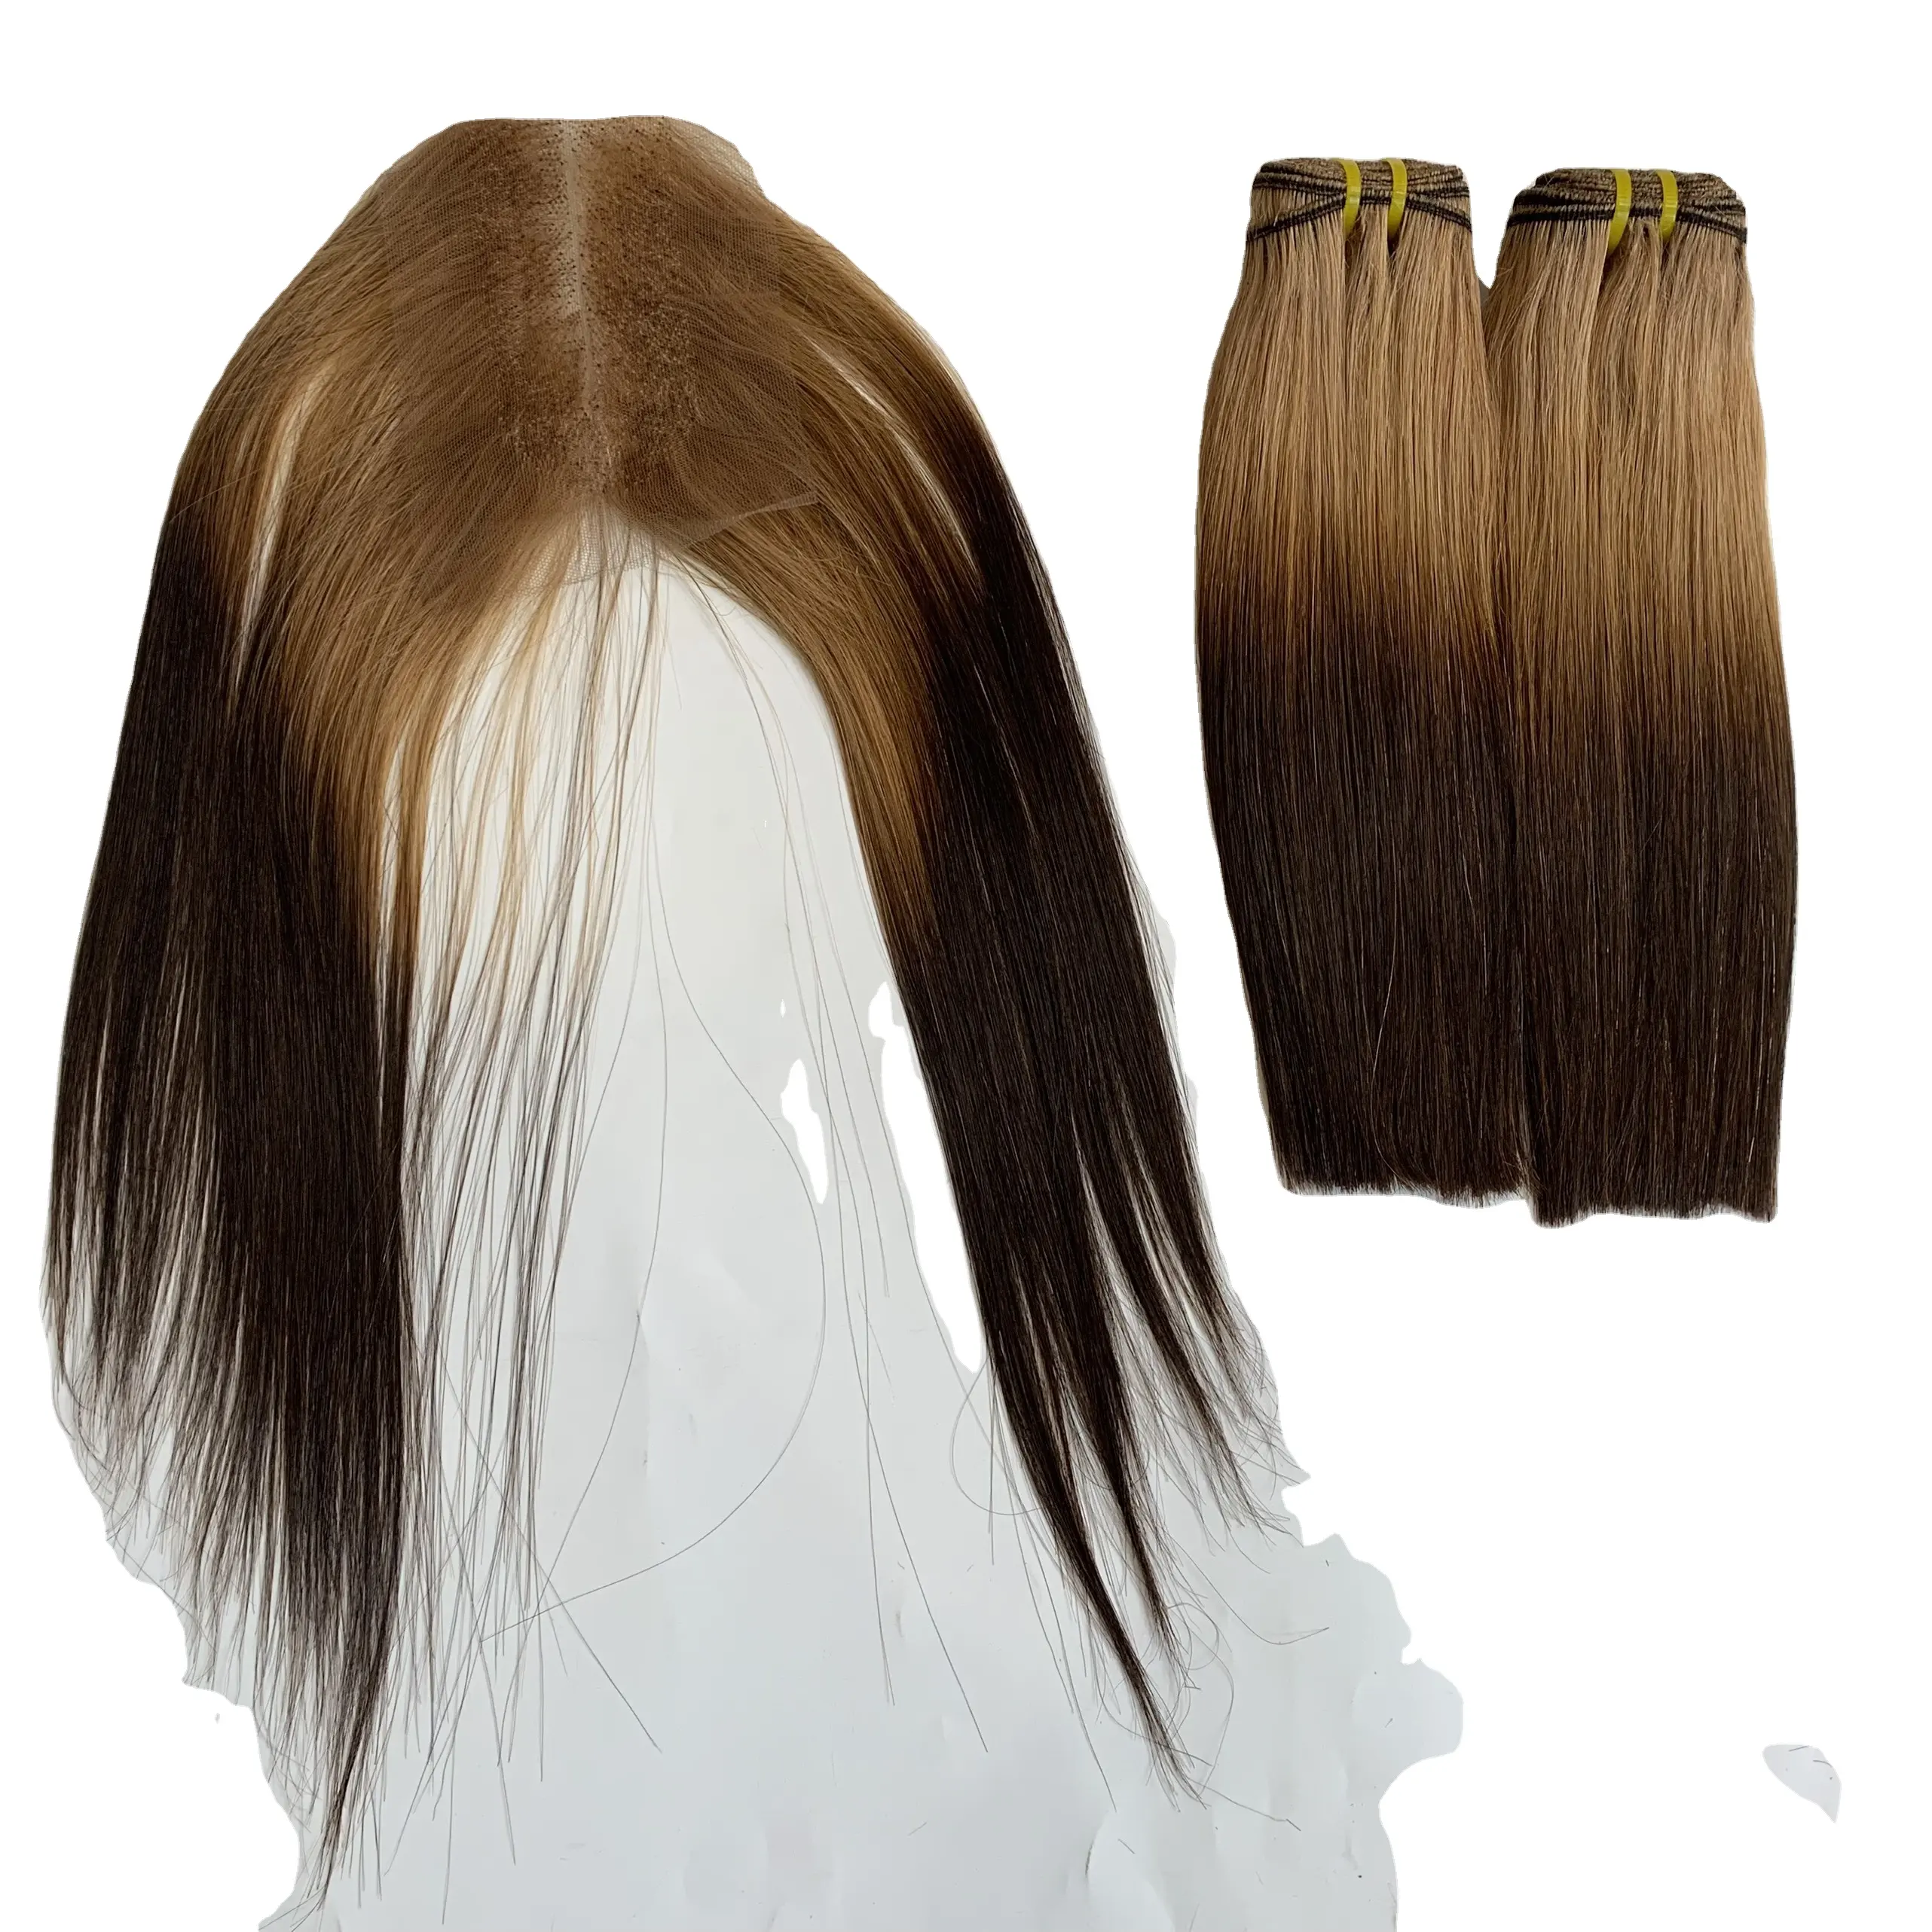 إغلاق 2 بواسطة 4 العظام مستقيم الشعر اللون الطبيعي الإنسان ريمي عالية الجودة الشعر من شركة Livihair في شعر فيتنام التمديد